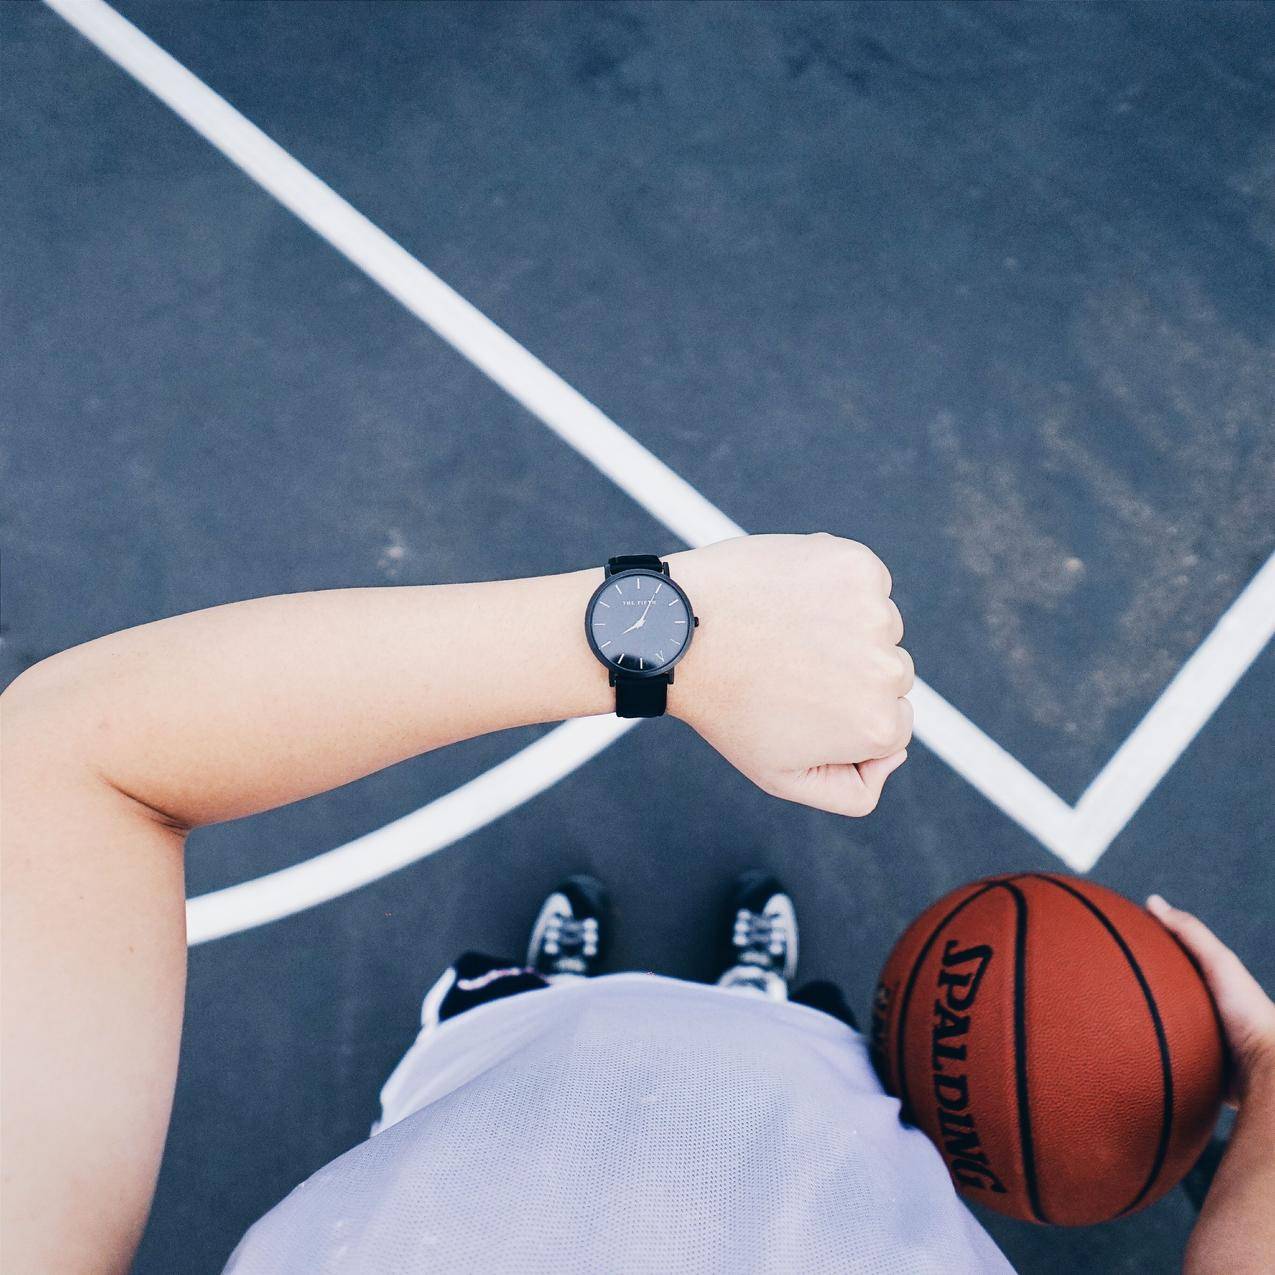 左手右手佩戴黑色圆形模拟手表,右手持篮球